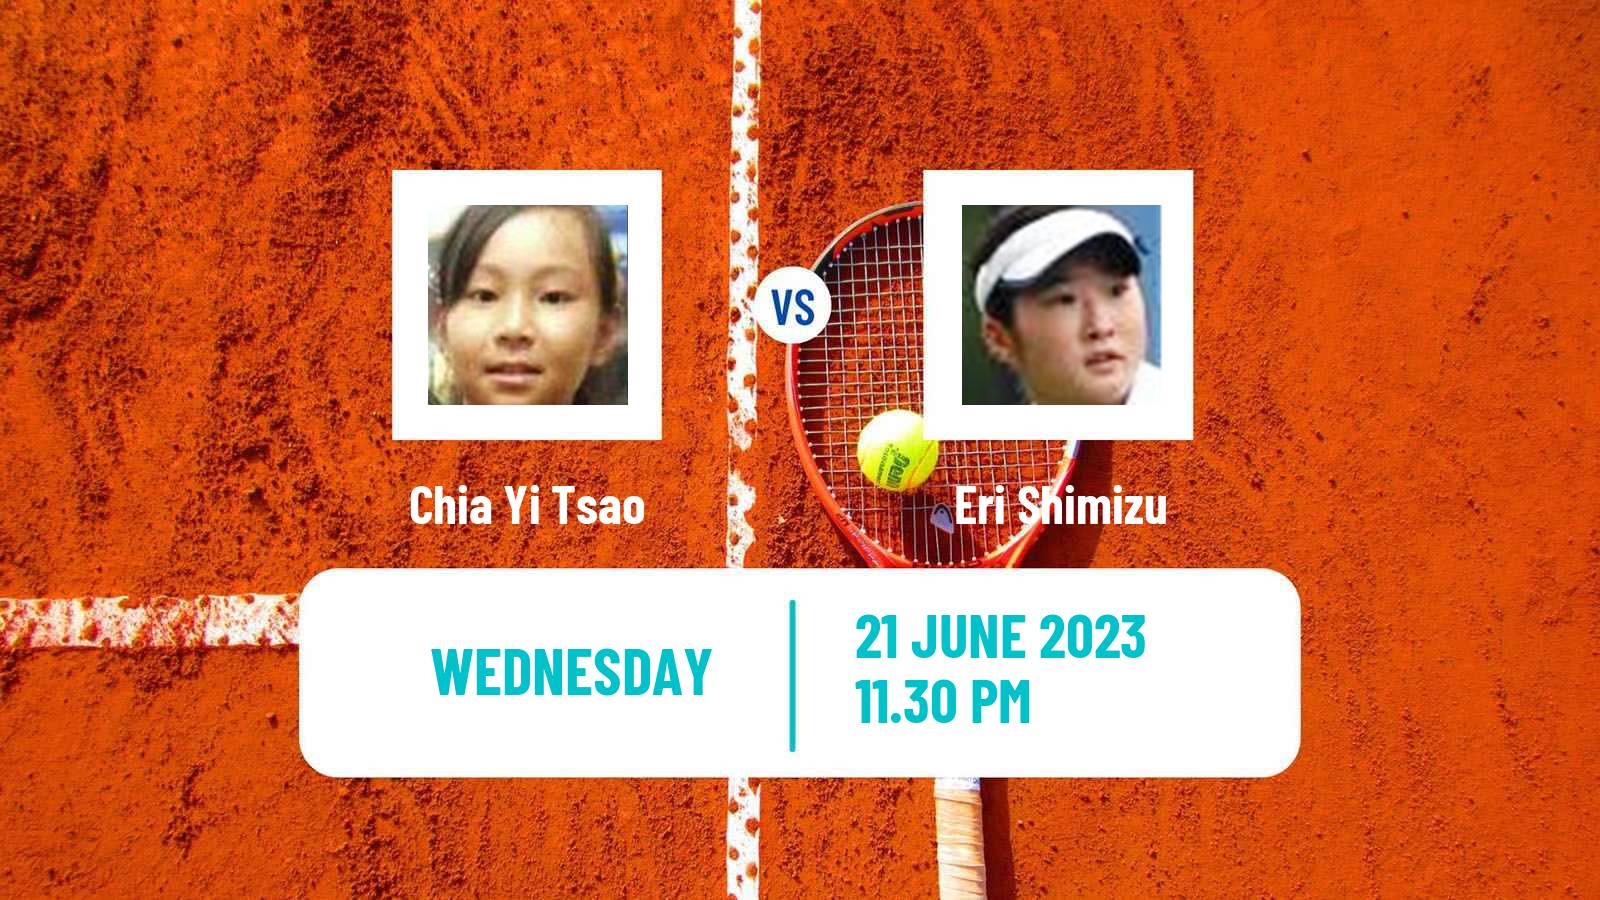 Tennis ITF W25 Tainan 2 Women Chia Yi Tsao - Eri Shimizu